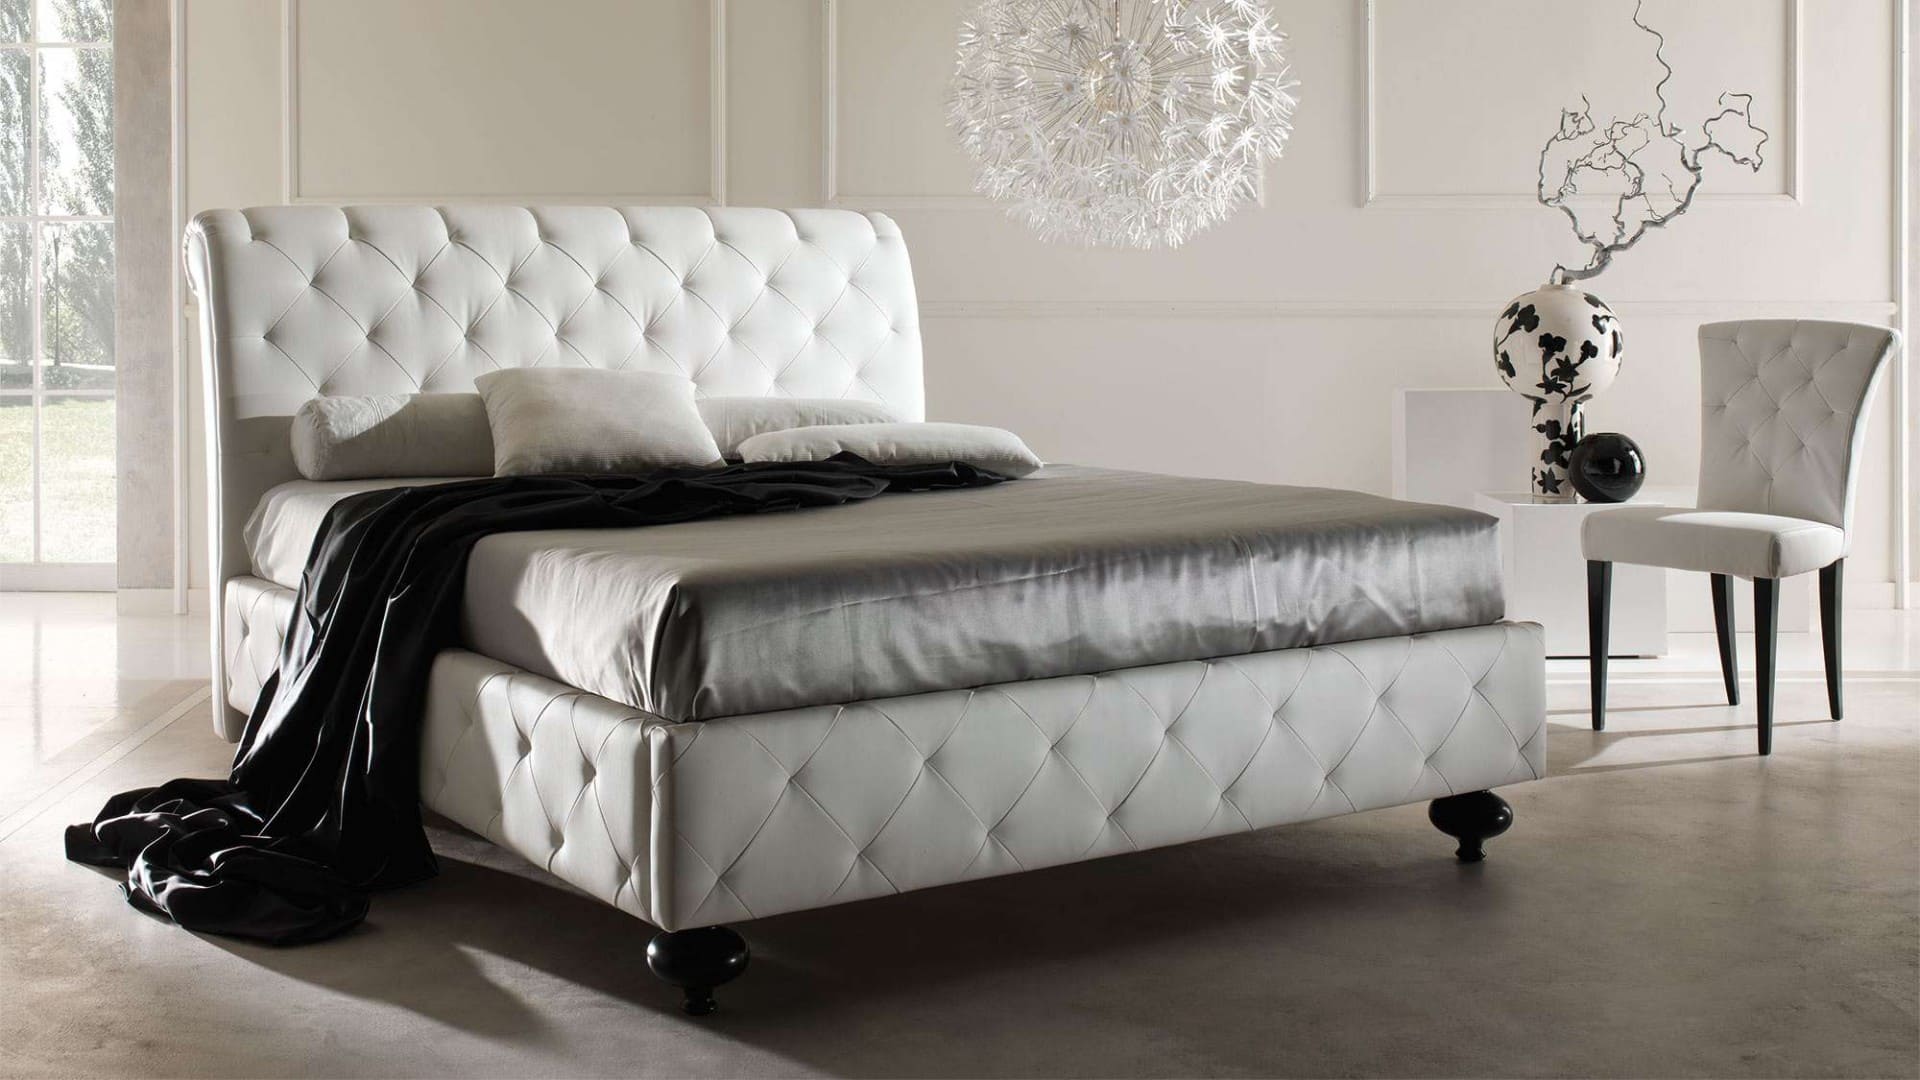 mẫu thiết kế giường da hiện đại 